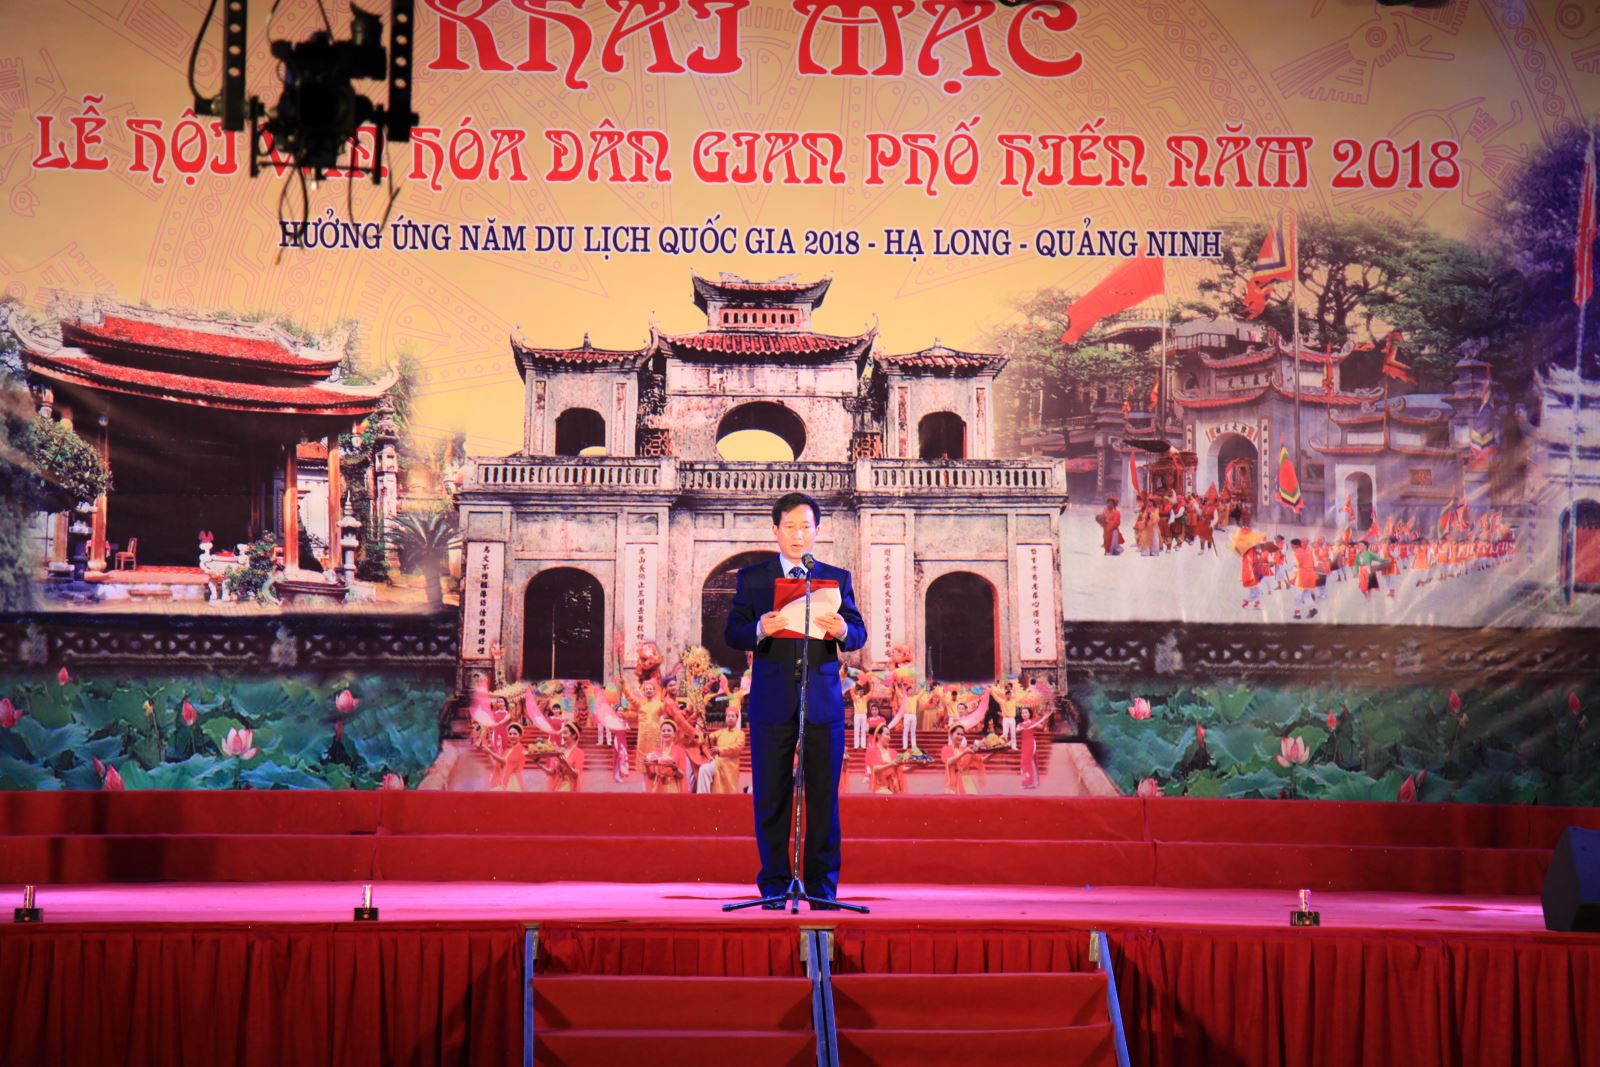 Khai mạc Lễ hội văn hóa dân gian Phố Hiến hưởng ứng năm Du lịch quốc gia 2018 - Hạ Long – Quảng Ninh